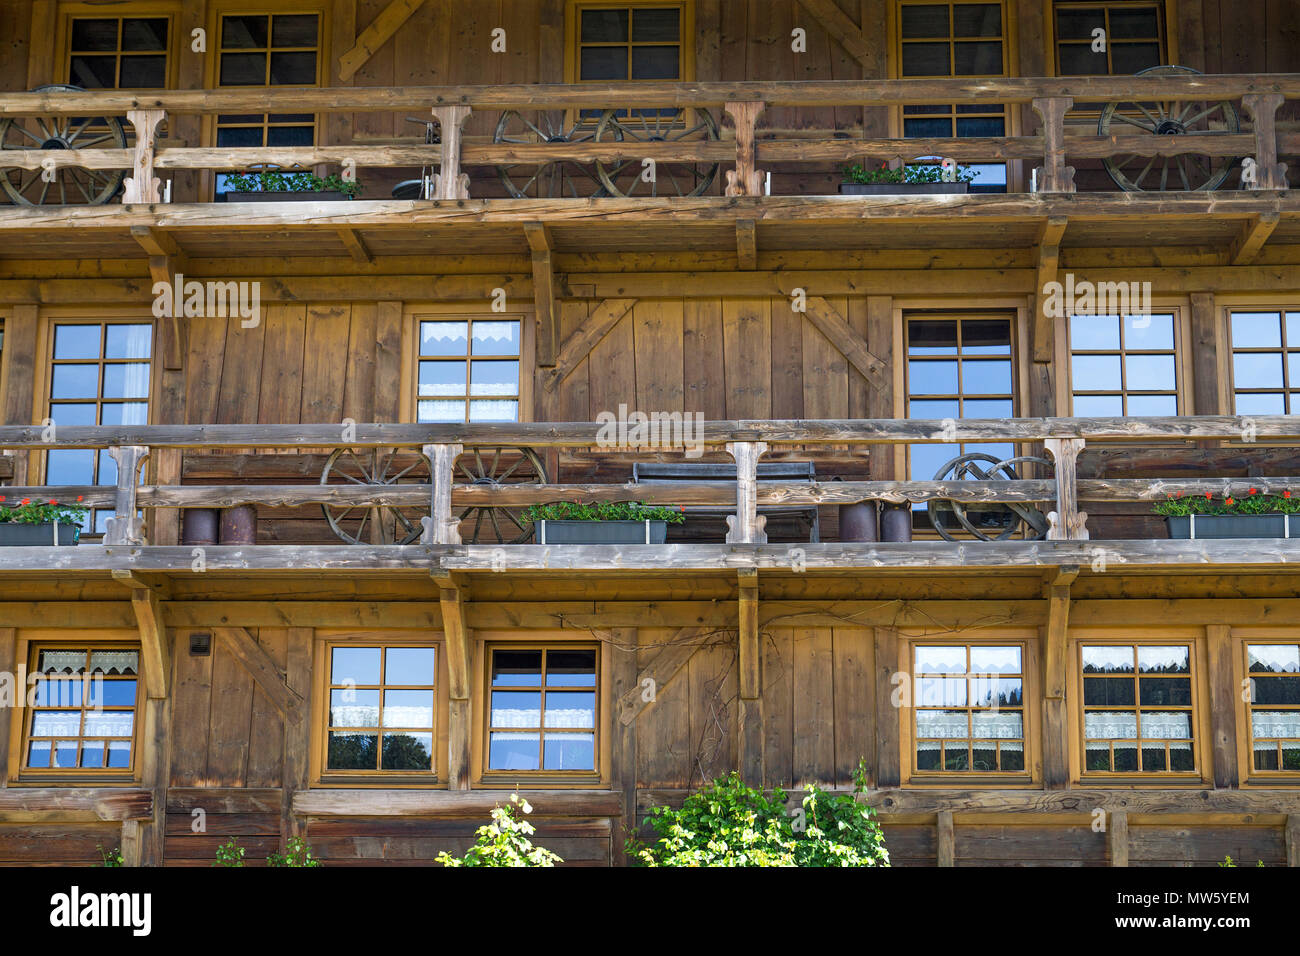 Détail d'une maison en bois typique de la forêt noire au village de Schonach, Forêt-Noire, Bade-Wurtemberg, Allemagne, Europe Banque D'Images